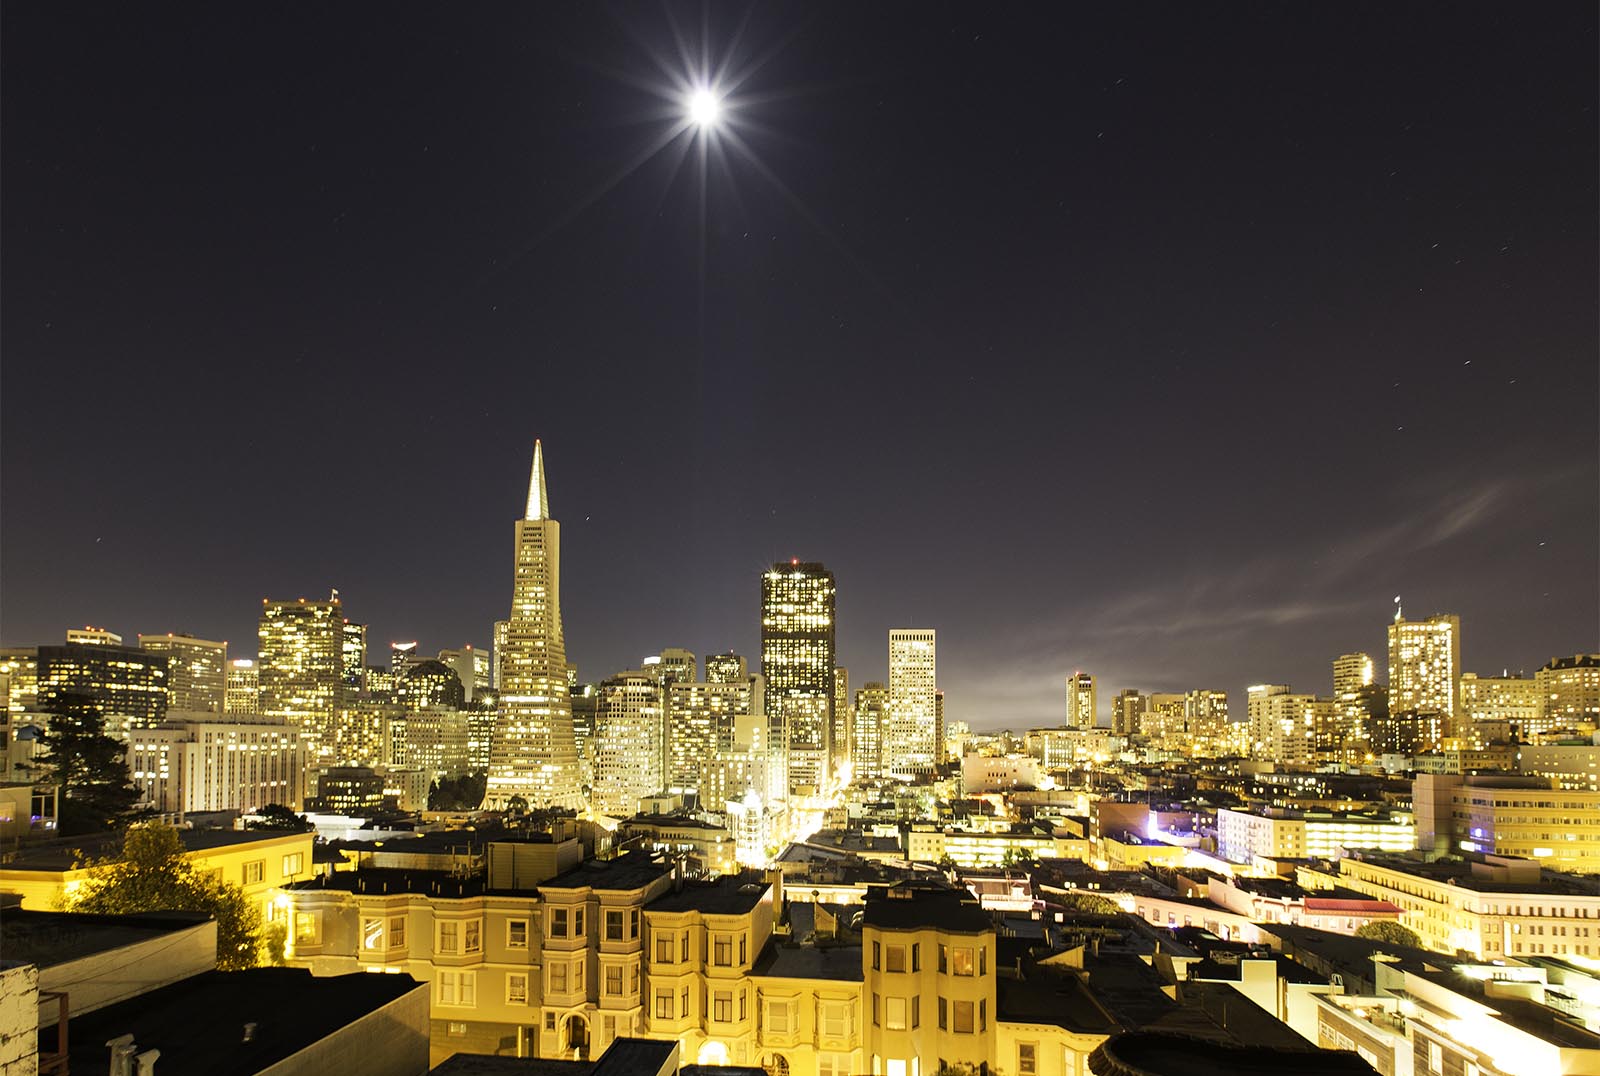 San Francisco at night 